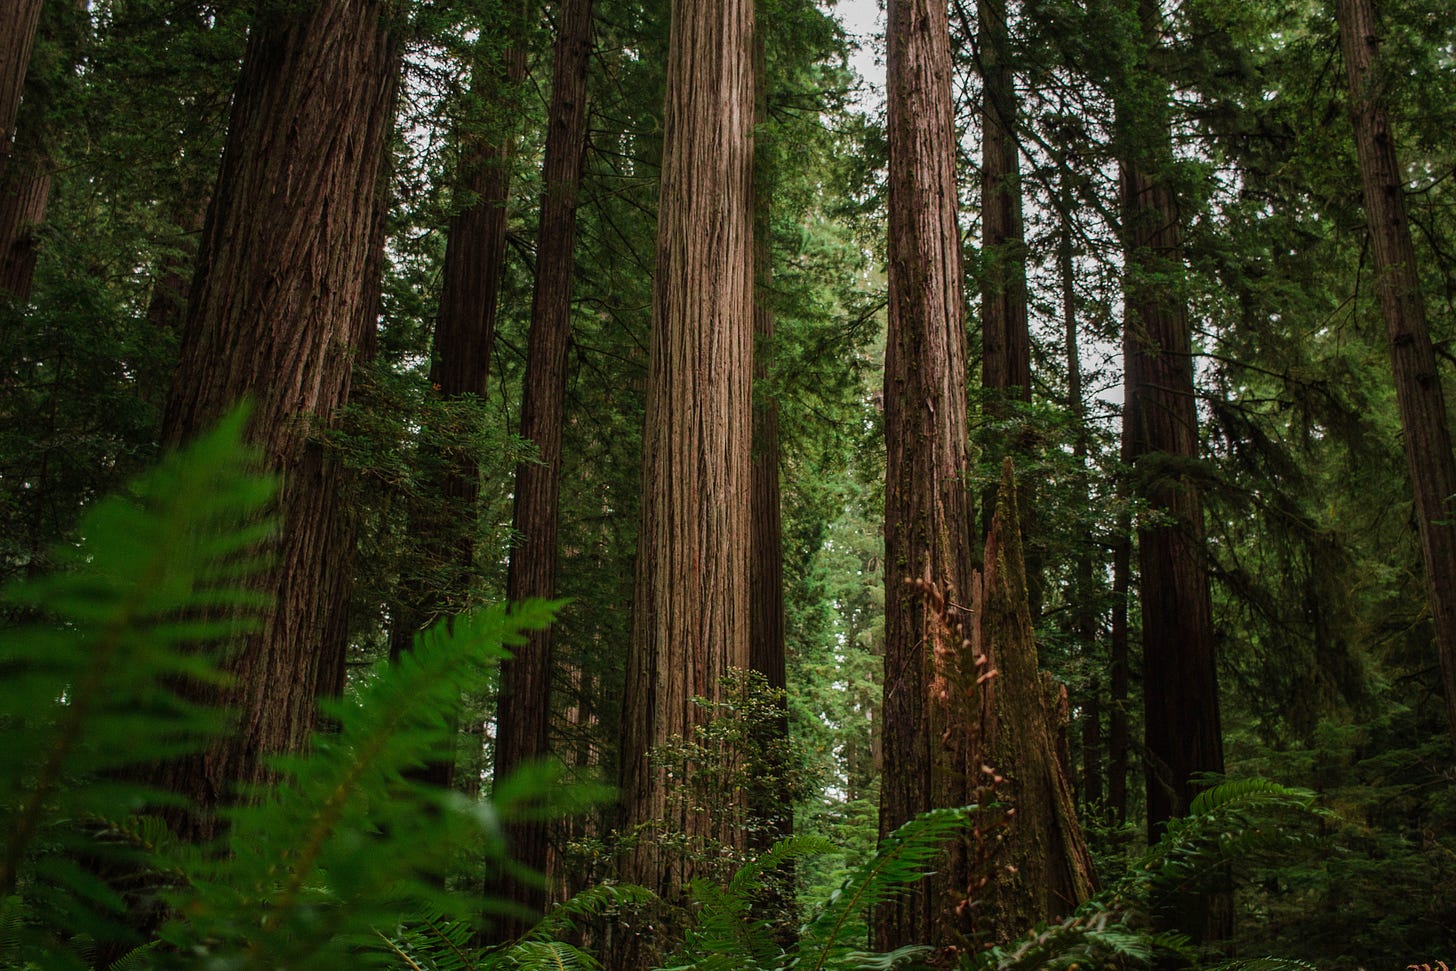 Image of giant redwood trees via Hannah Grace on Upsplash